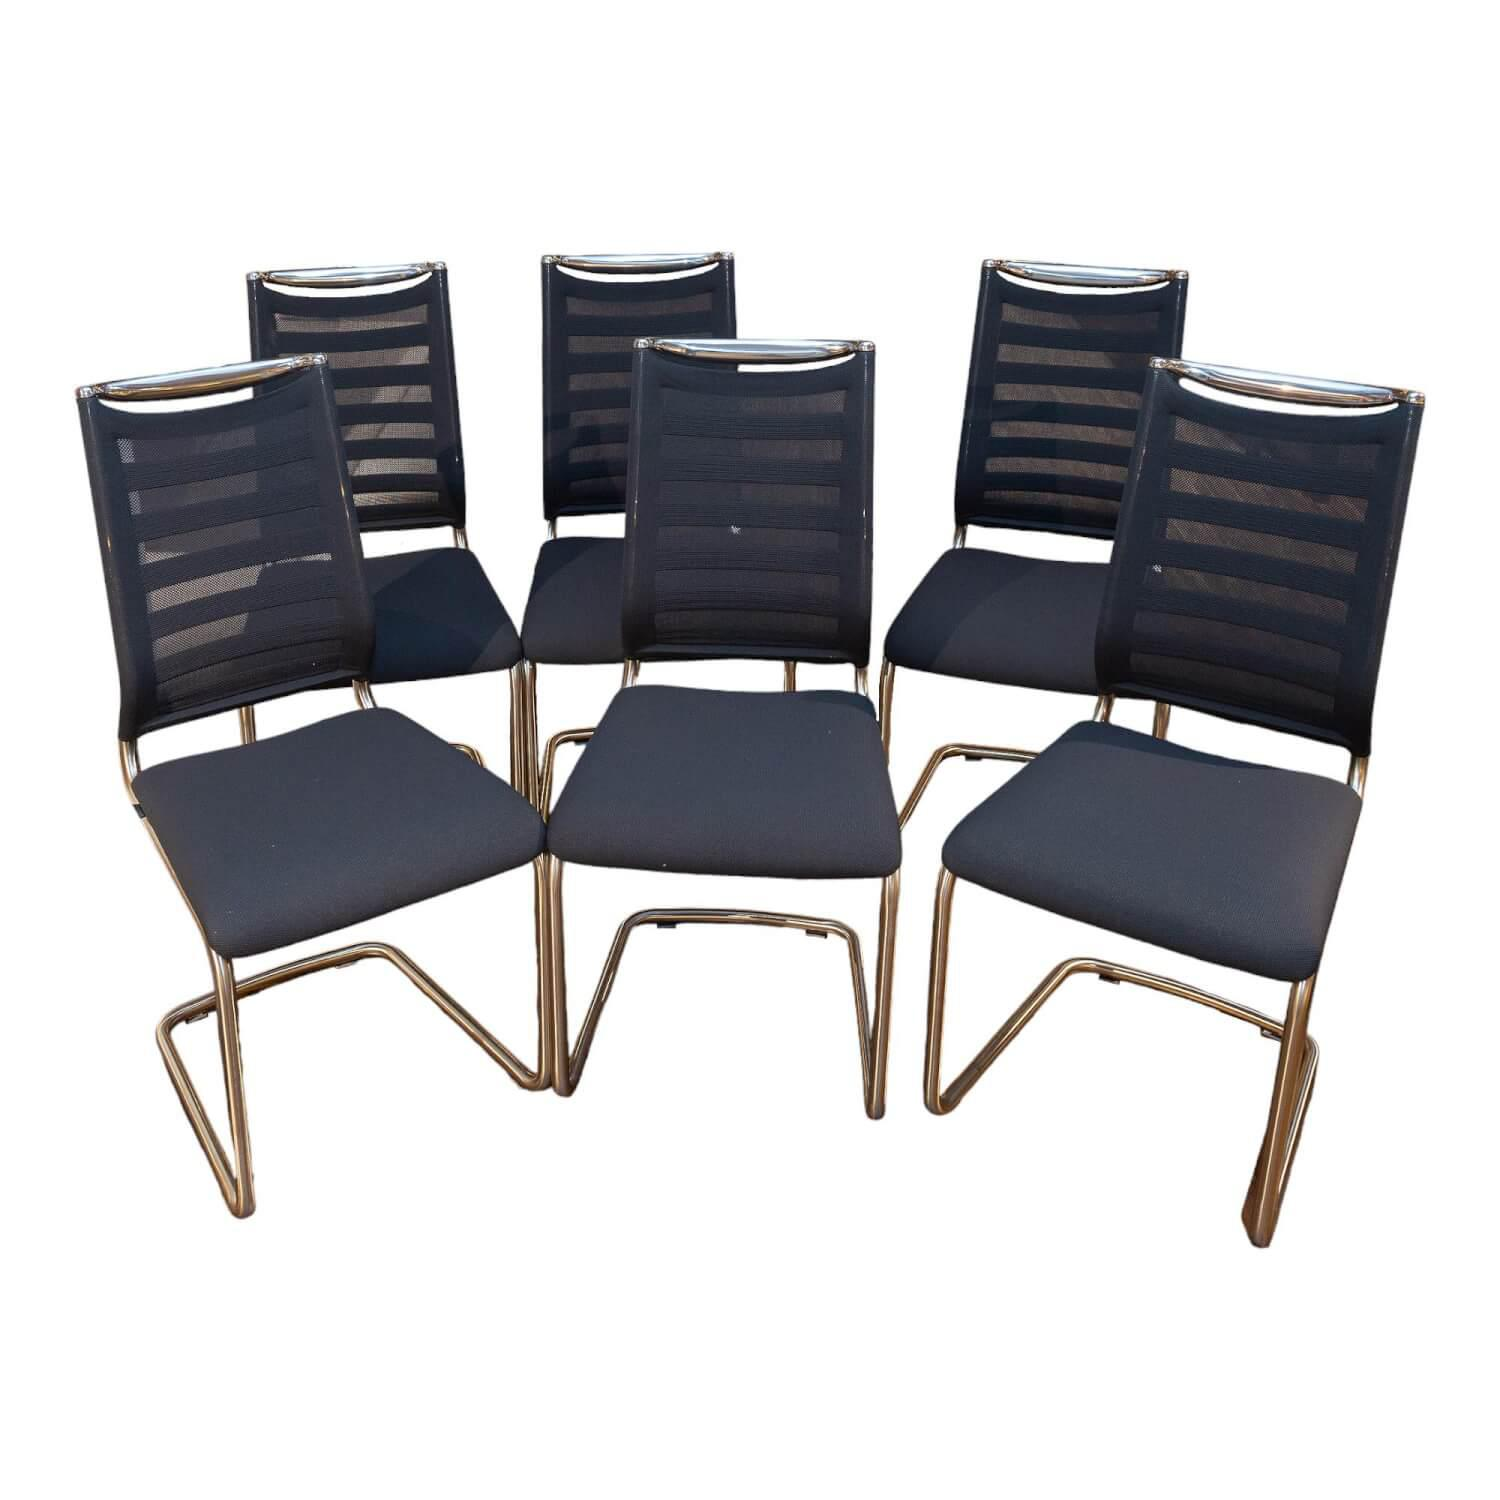 Sitzbezug Stuhl – Die 15 besten Produkte im Vergleich - WinTotal